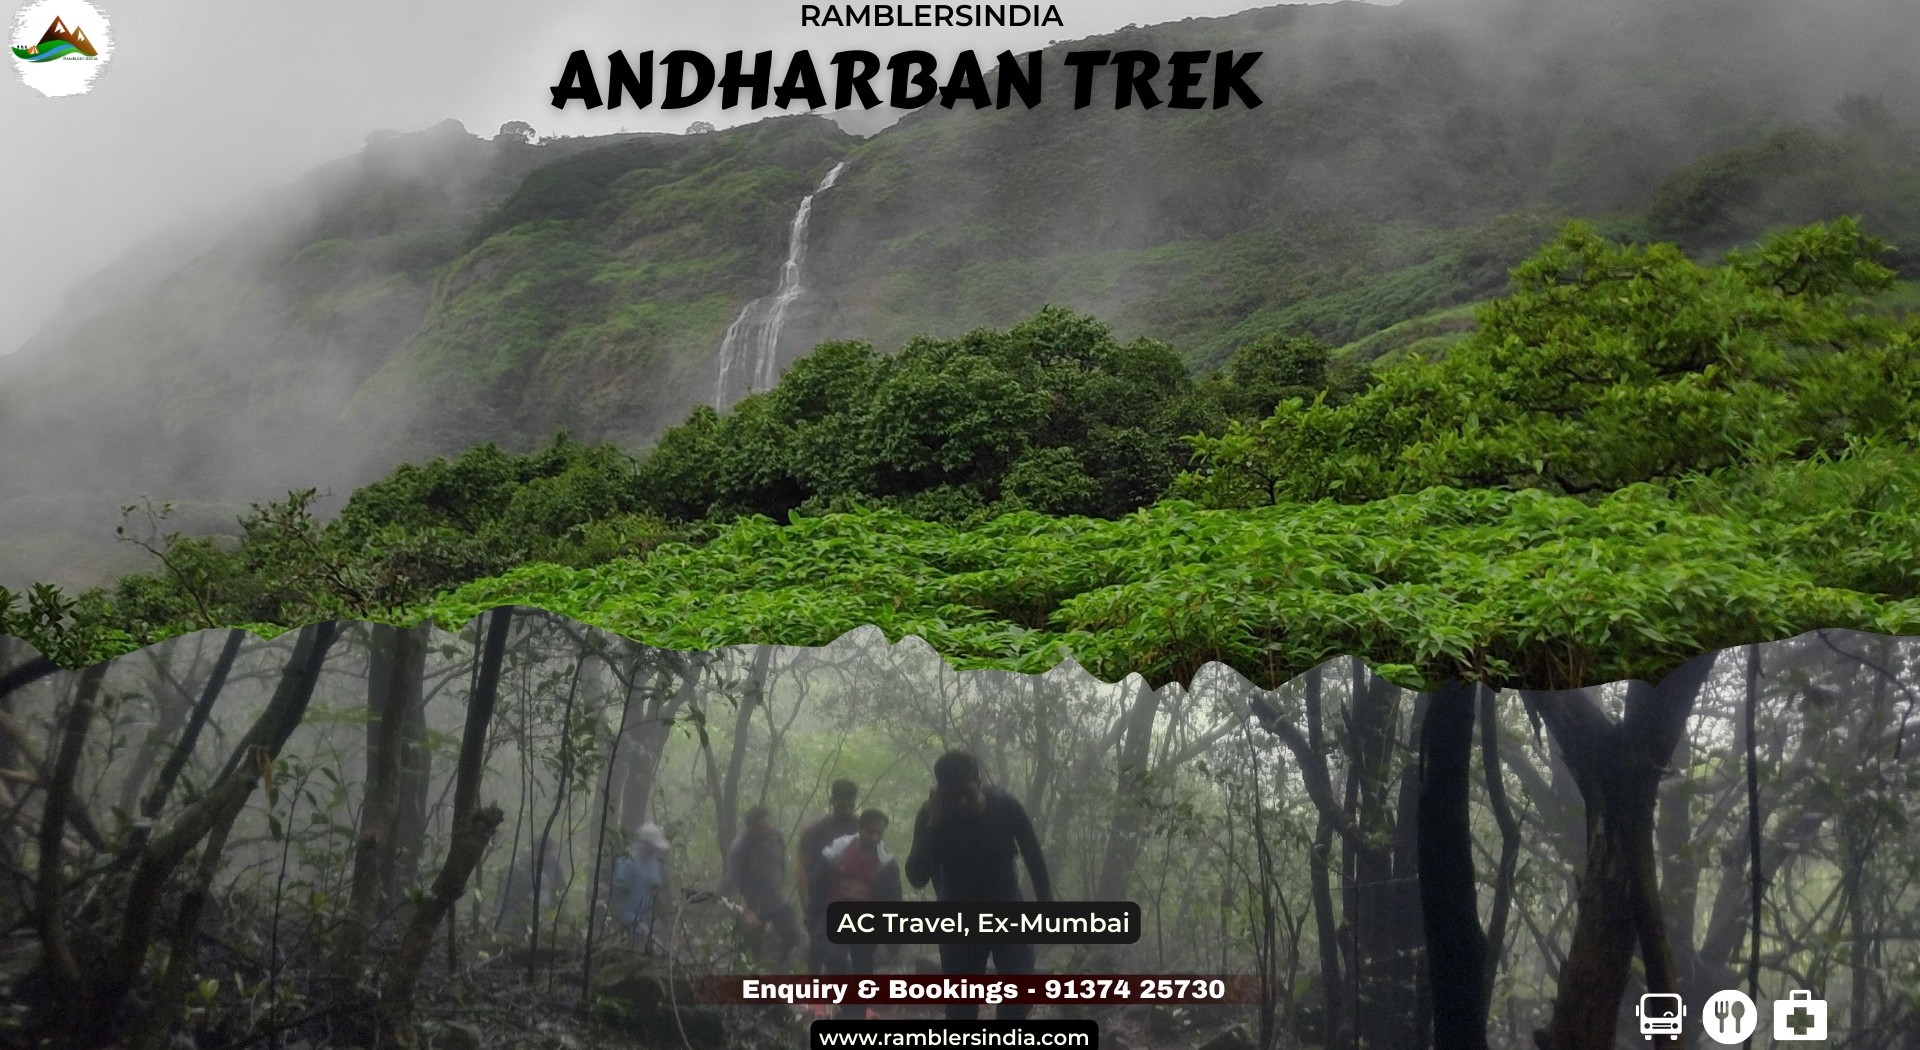 andharban trek information in marathi